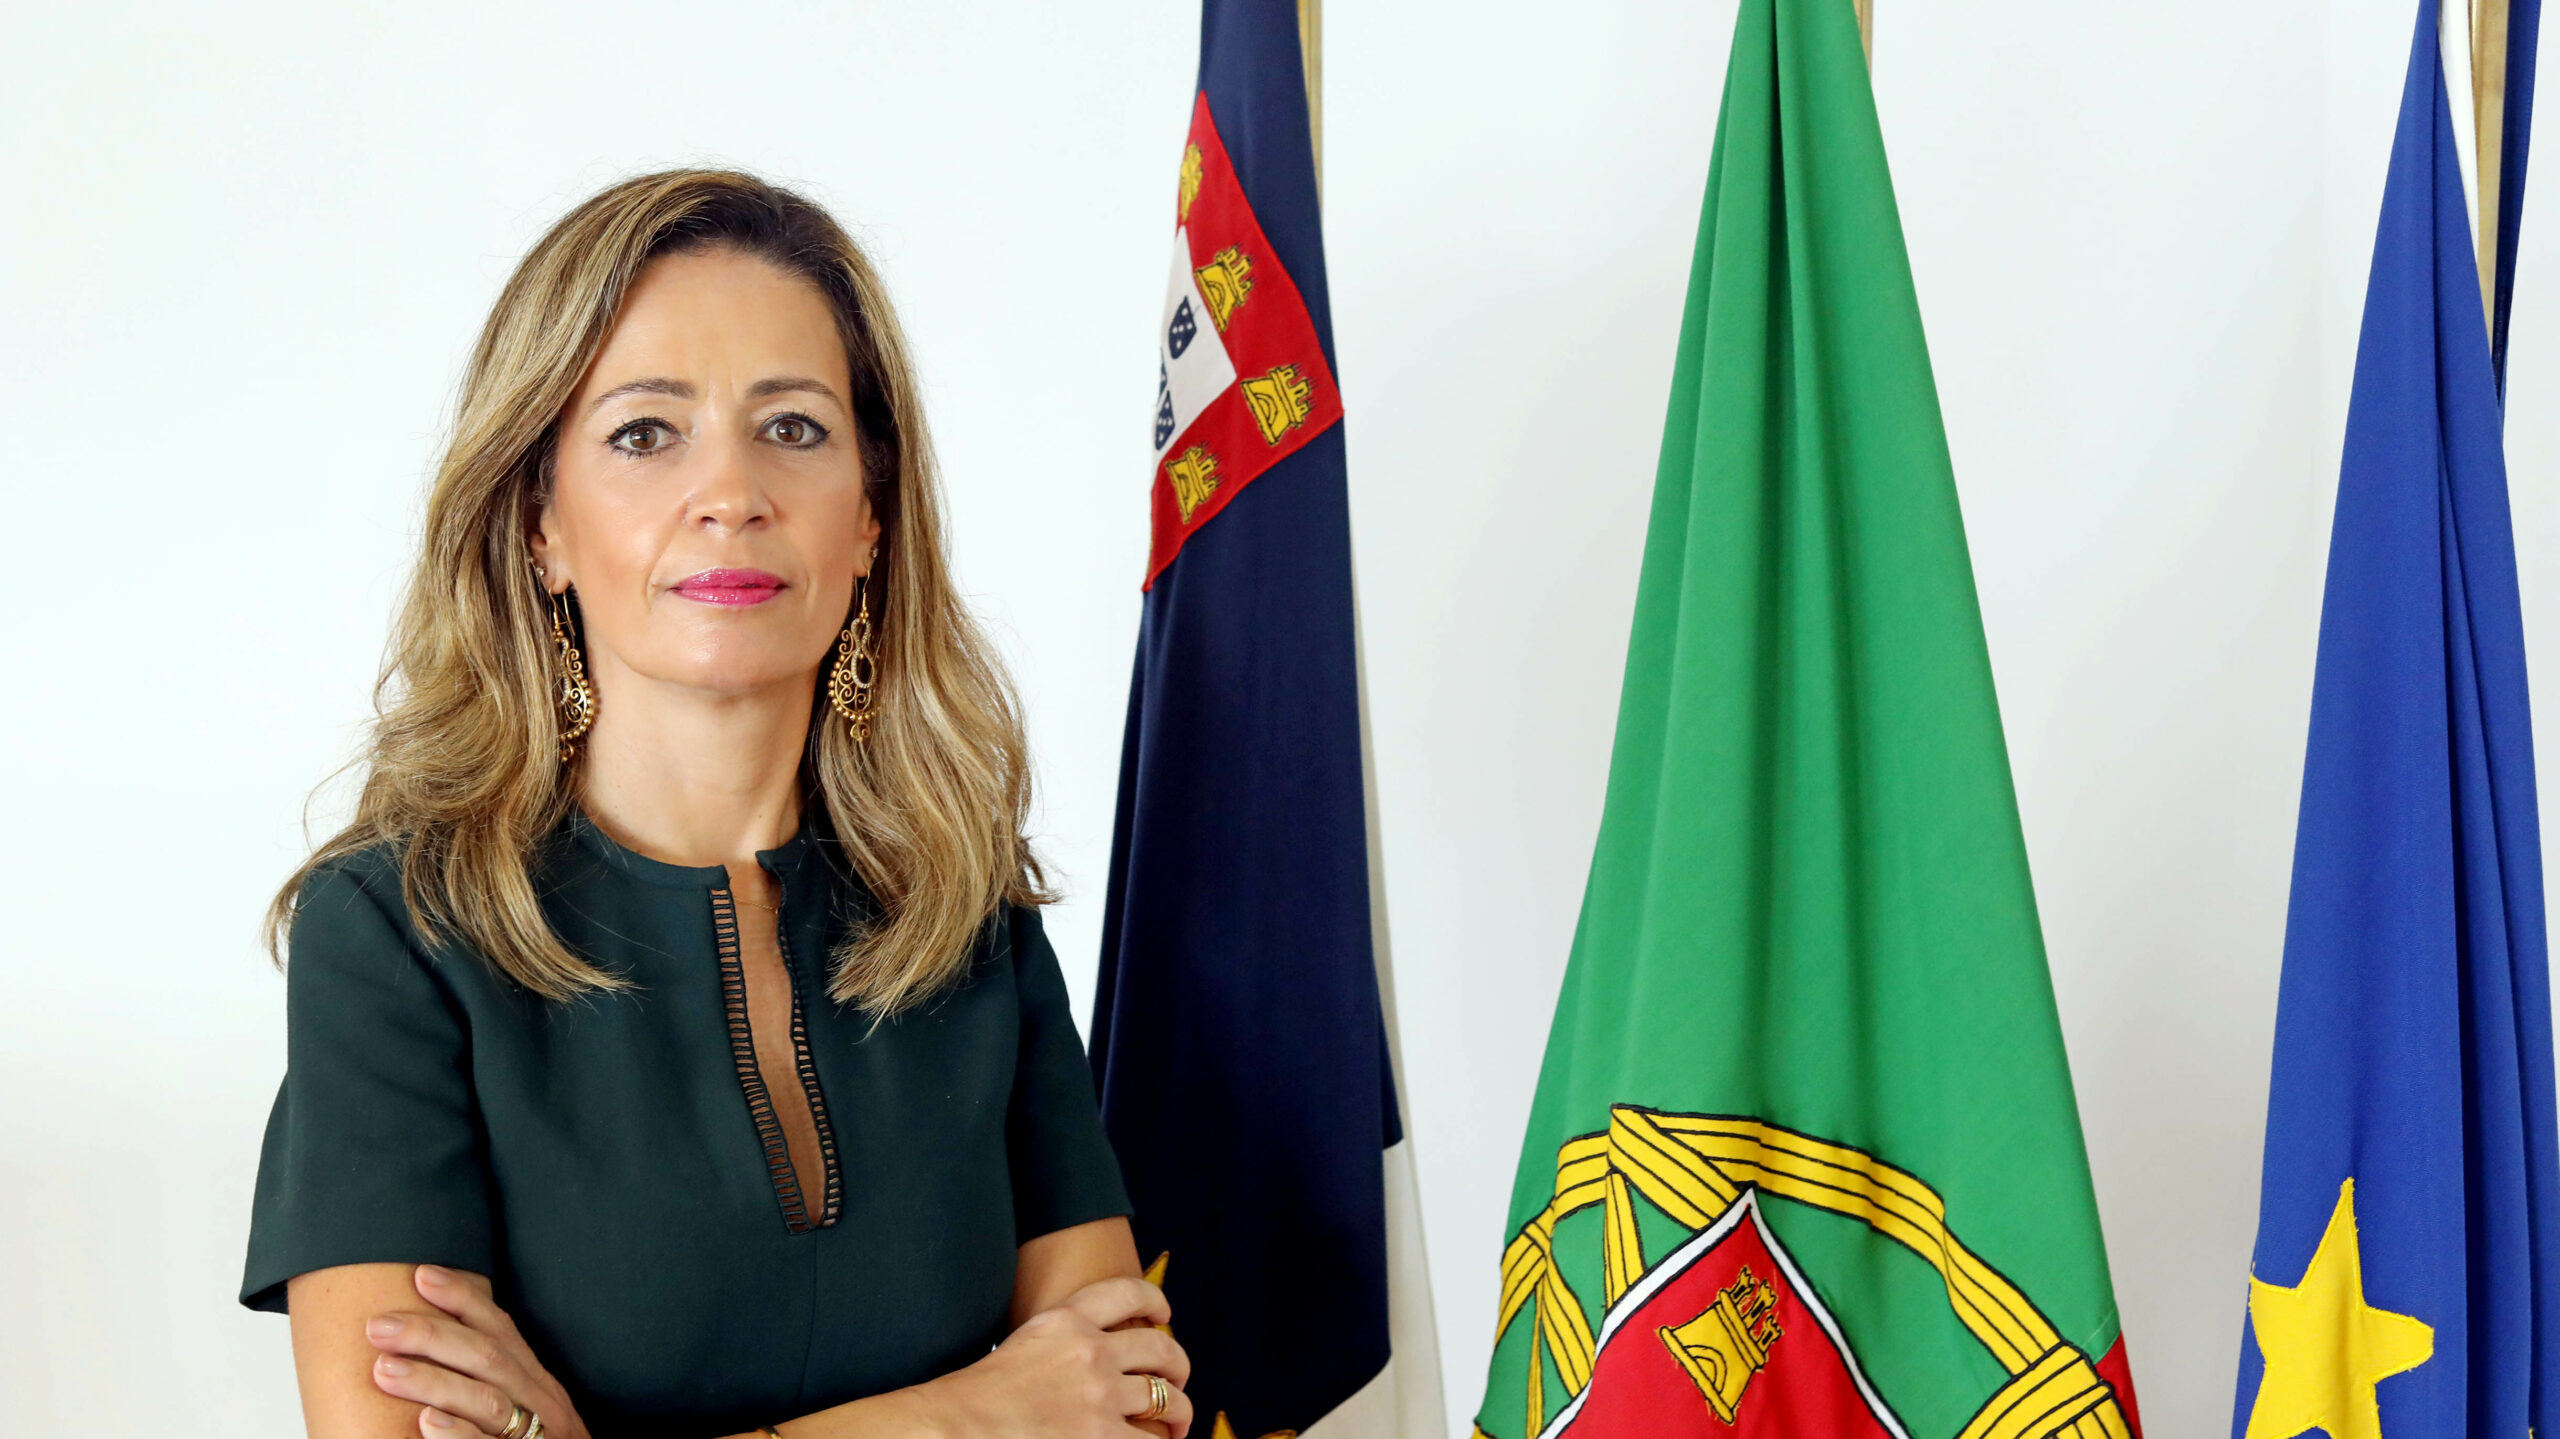 Candidatura dos Açores ao Mecanismo de Reforço de Talentos aprovada pela Comissão Europeia, valoriza Maria João Carreiro